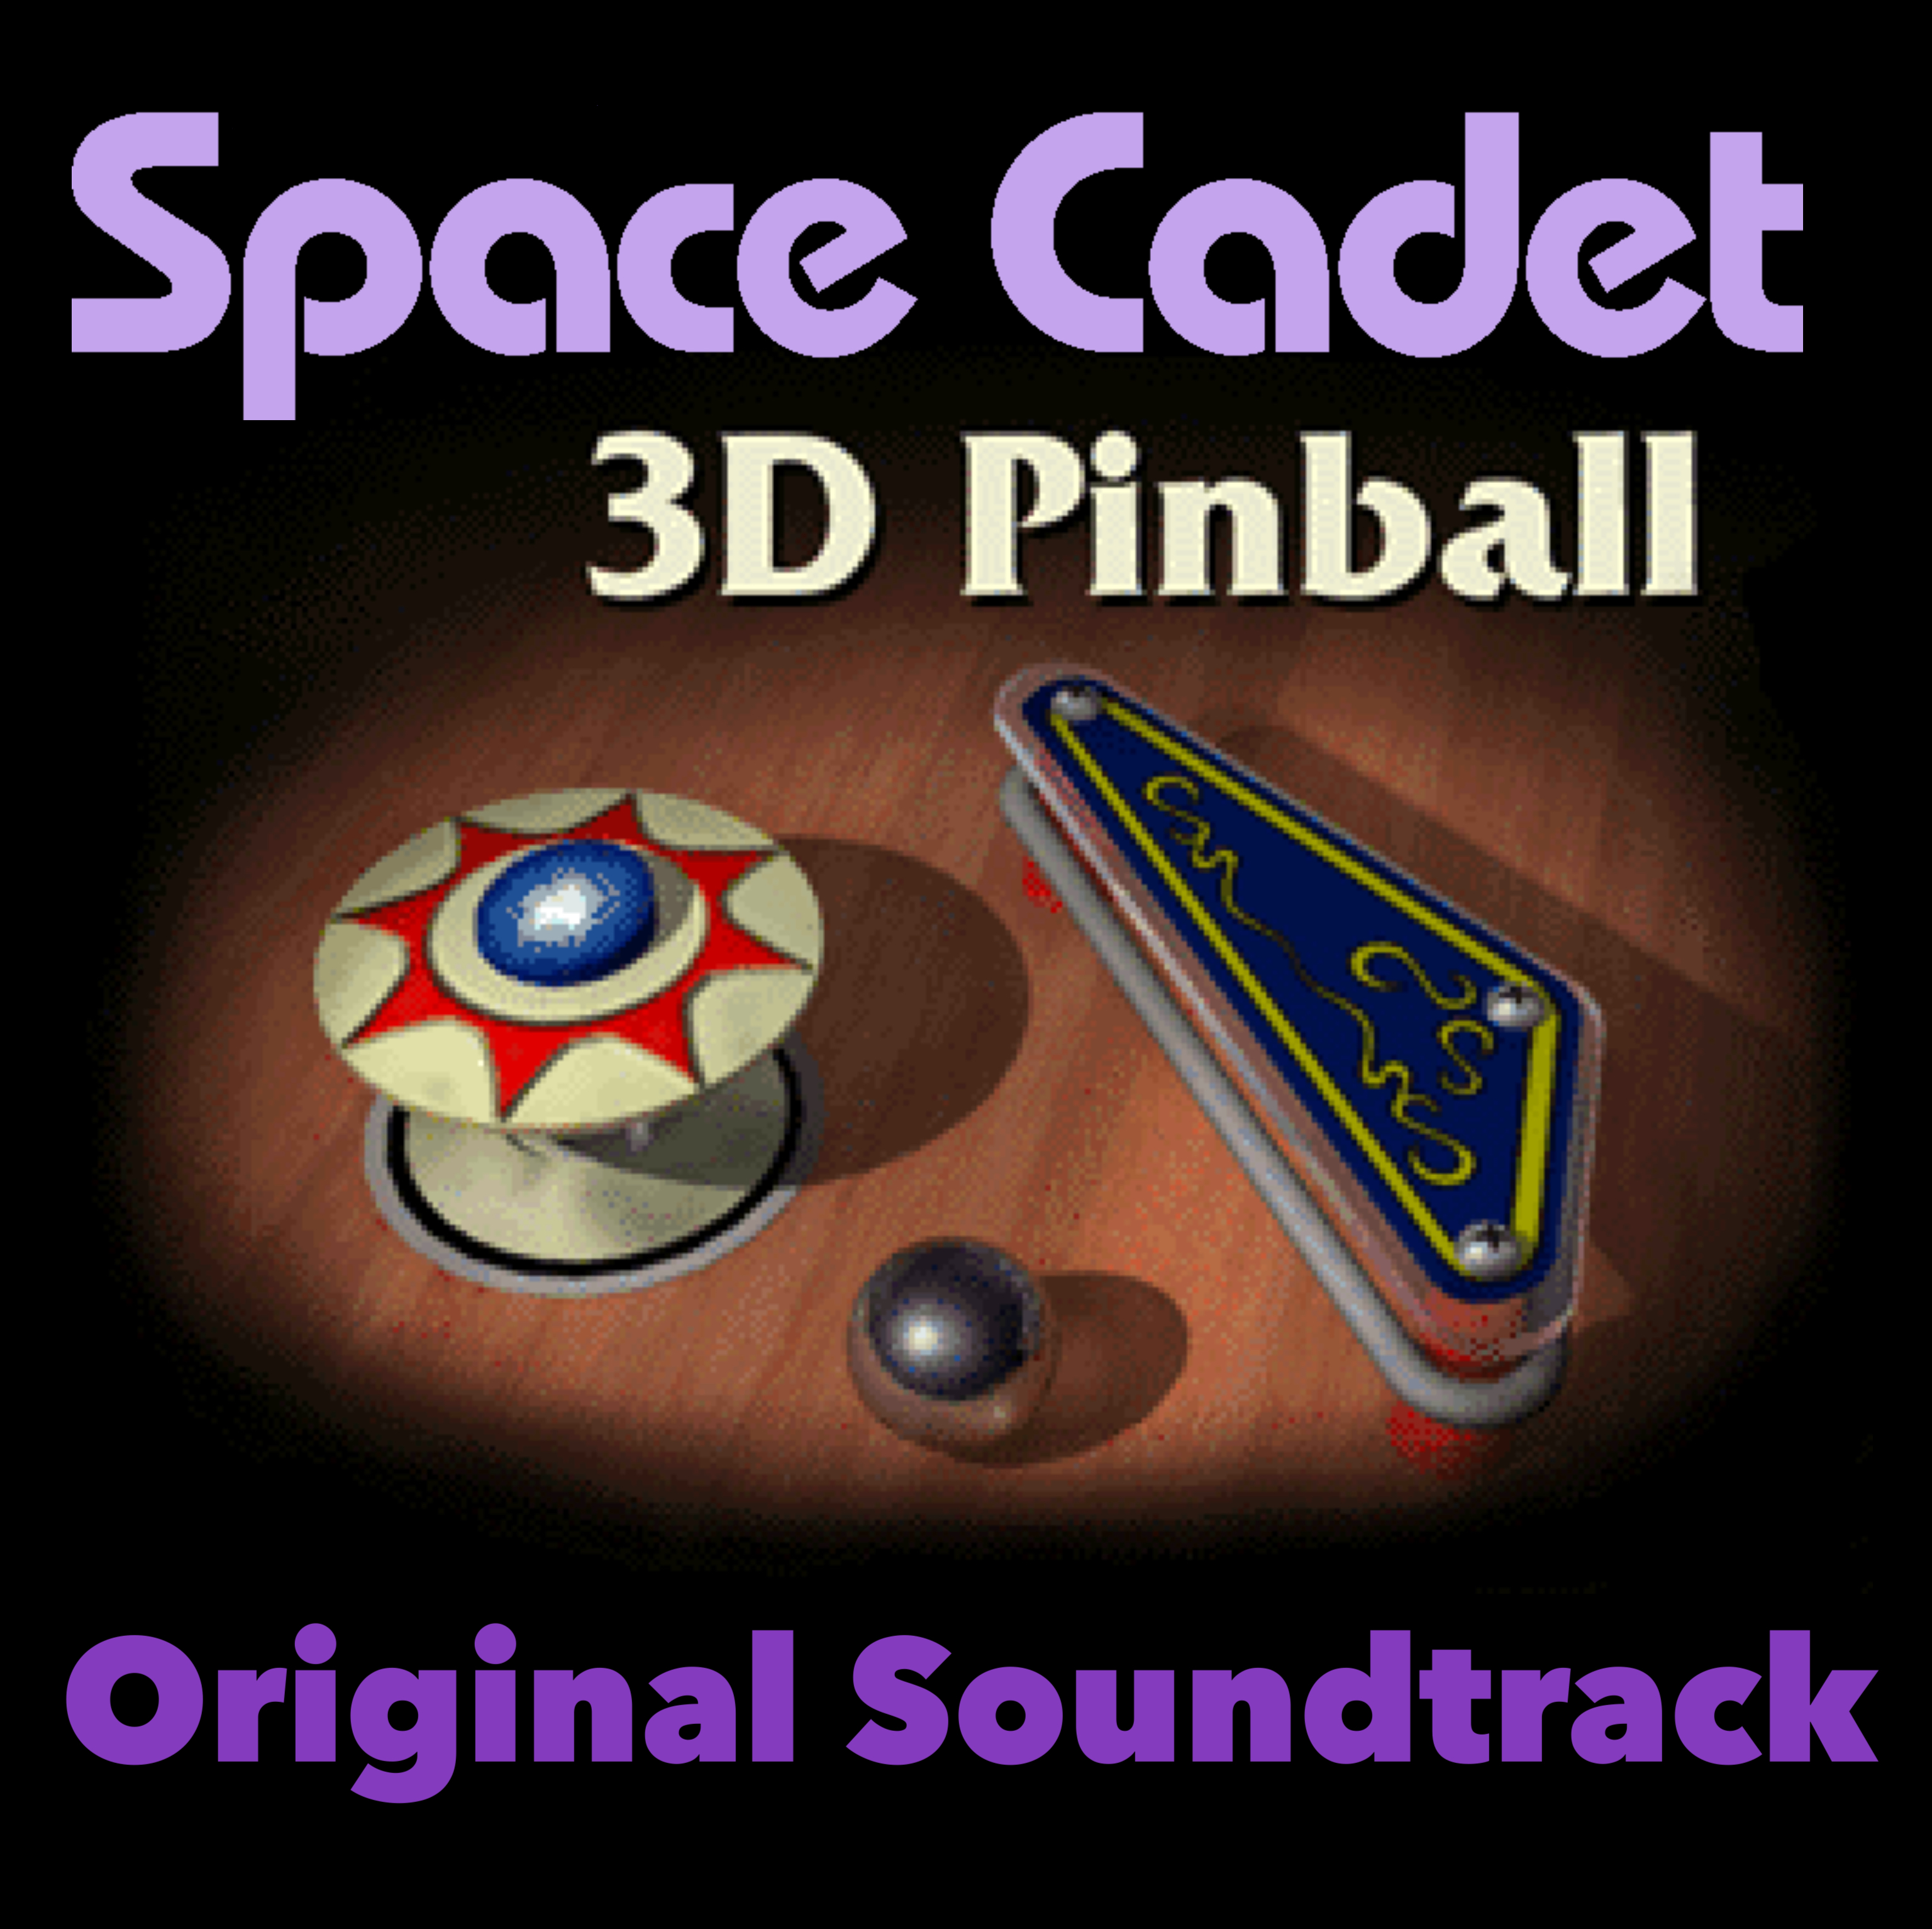 Pokémon Scarlet and Violet: The Definitive Soundtrack (Switch) (gamerip)  (2022) MP3 - Download Pokémon Scarlet and Violet: The Definitive Soundtrack  (Switch) (gamerip) (2022) Soundtracks for FREE!